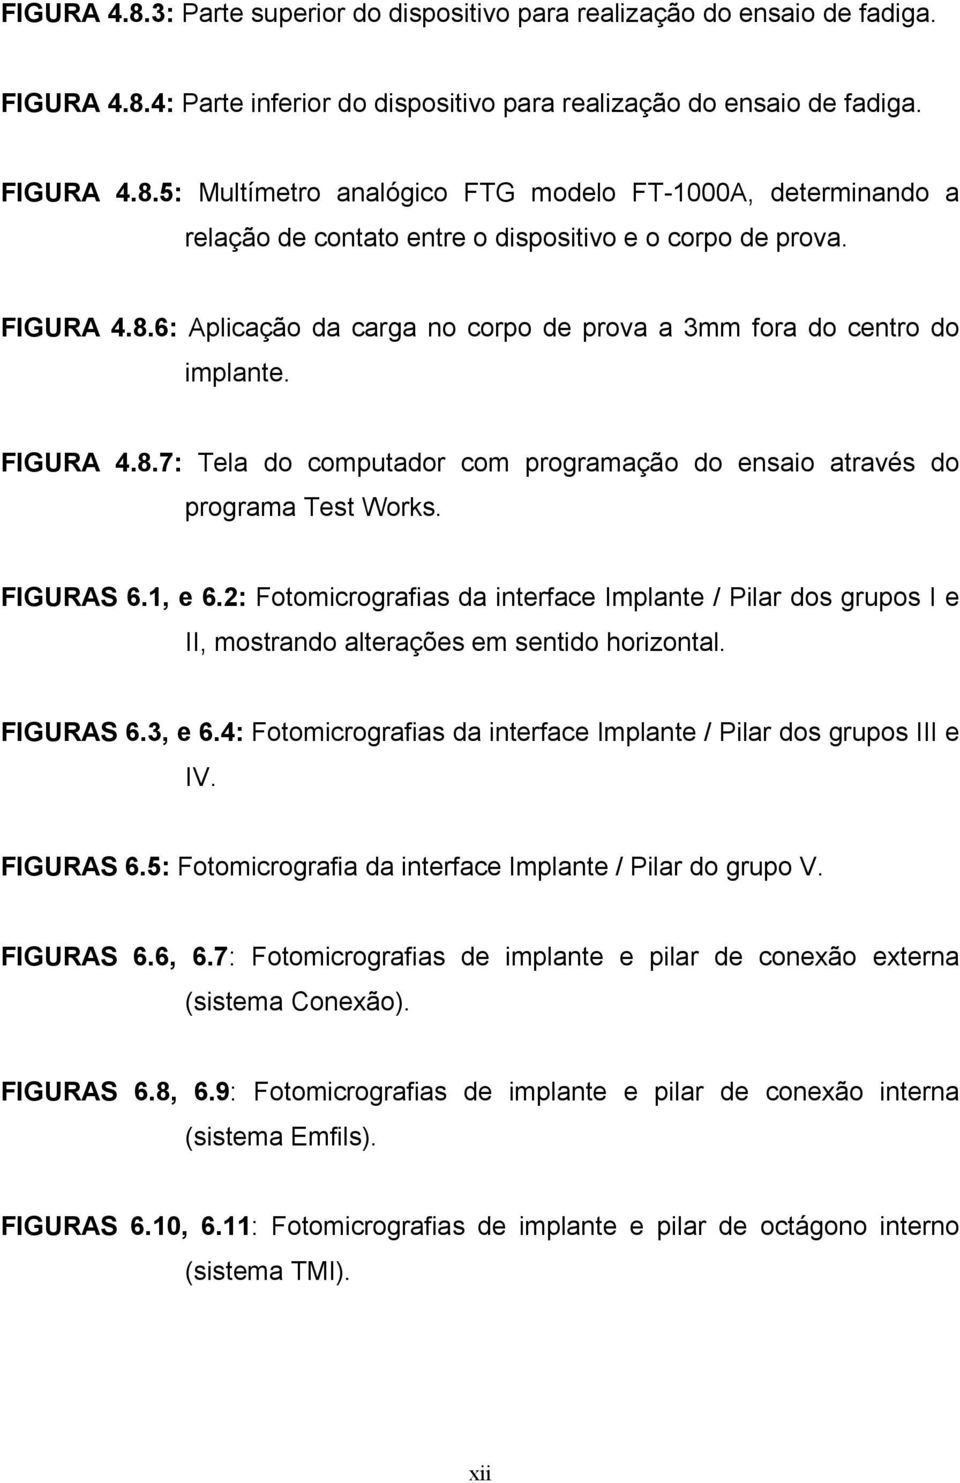 2: Fotomicrografias da interface Implante / Pilar dos grupos I e II, mostrando alterações em sentido horizontal. FIGURAS 6.3, e 6.4: Fotomicrografias da interface Implante / Pilar dos grupos III e IV.